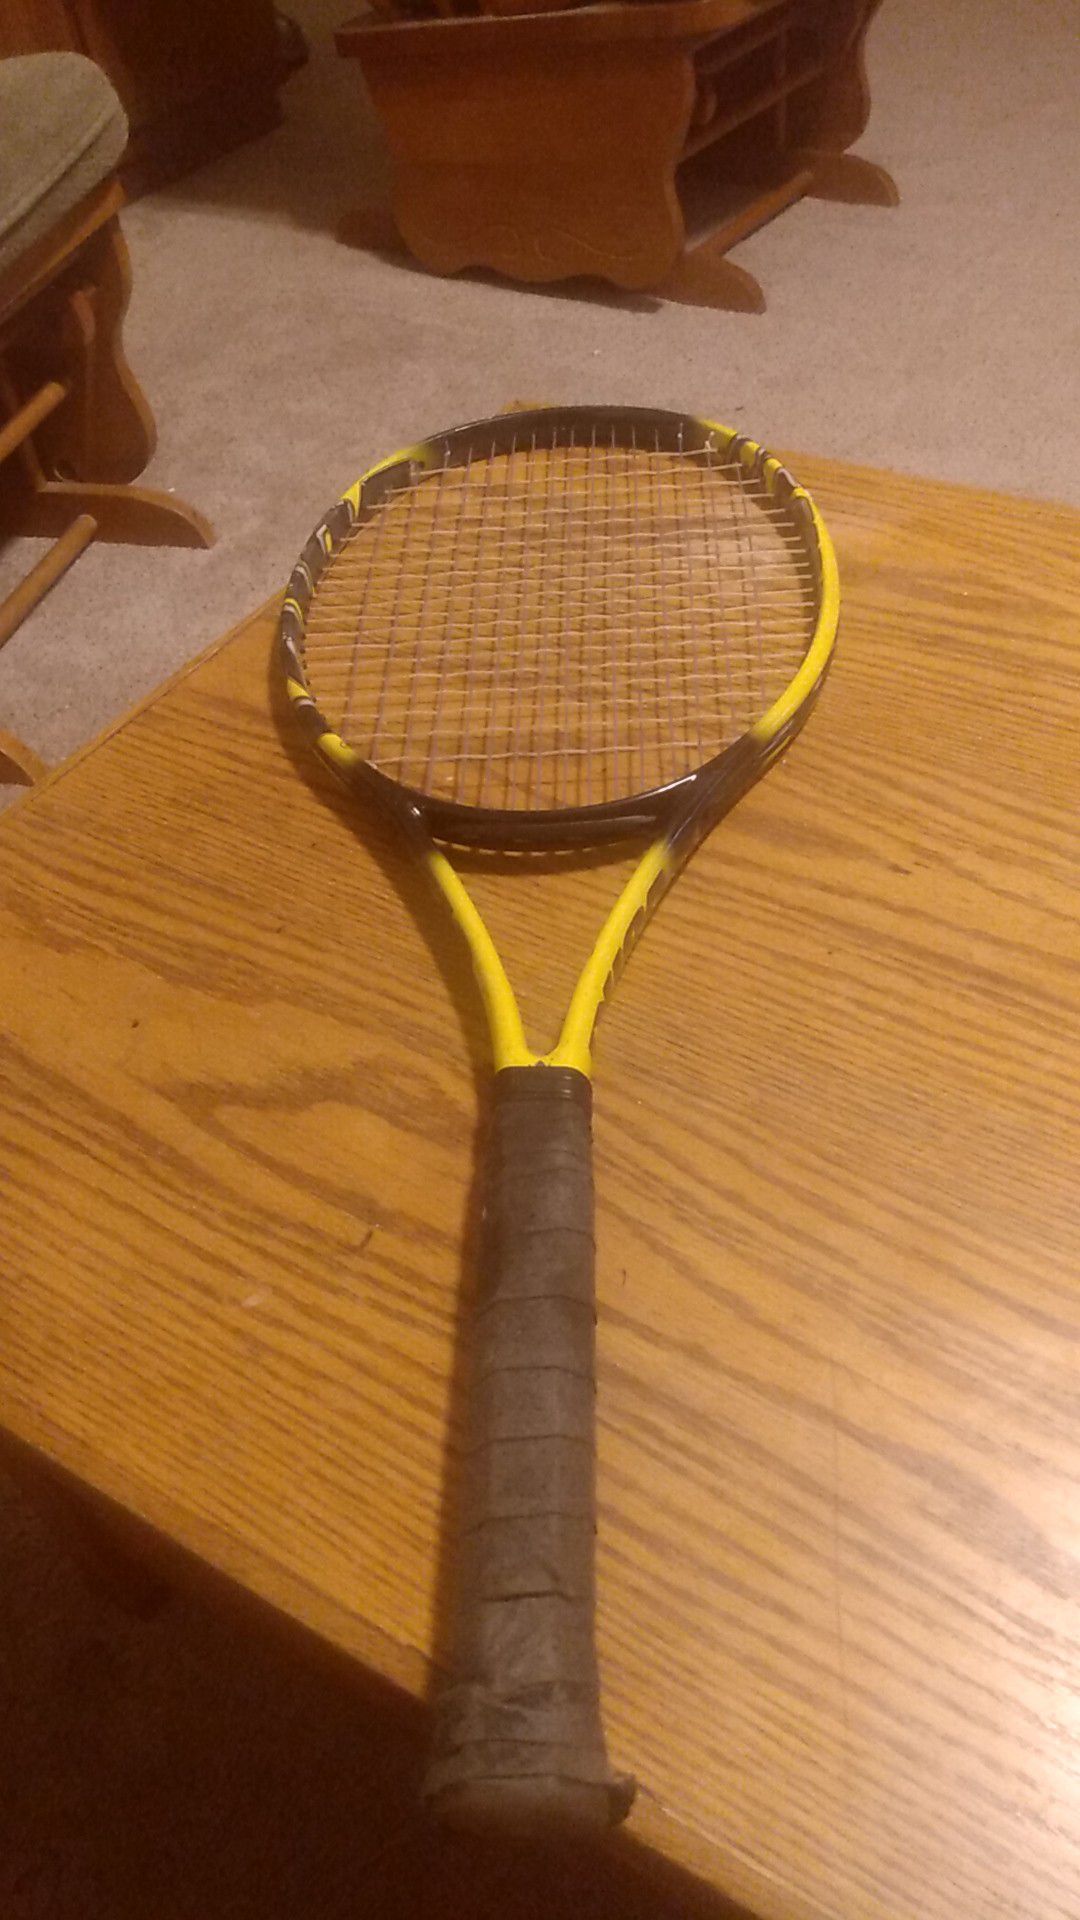 Volkl tennis racket